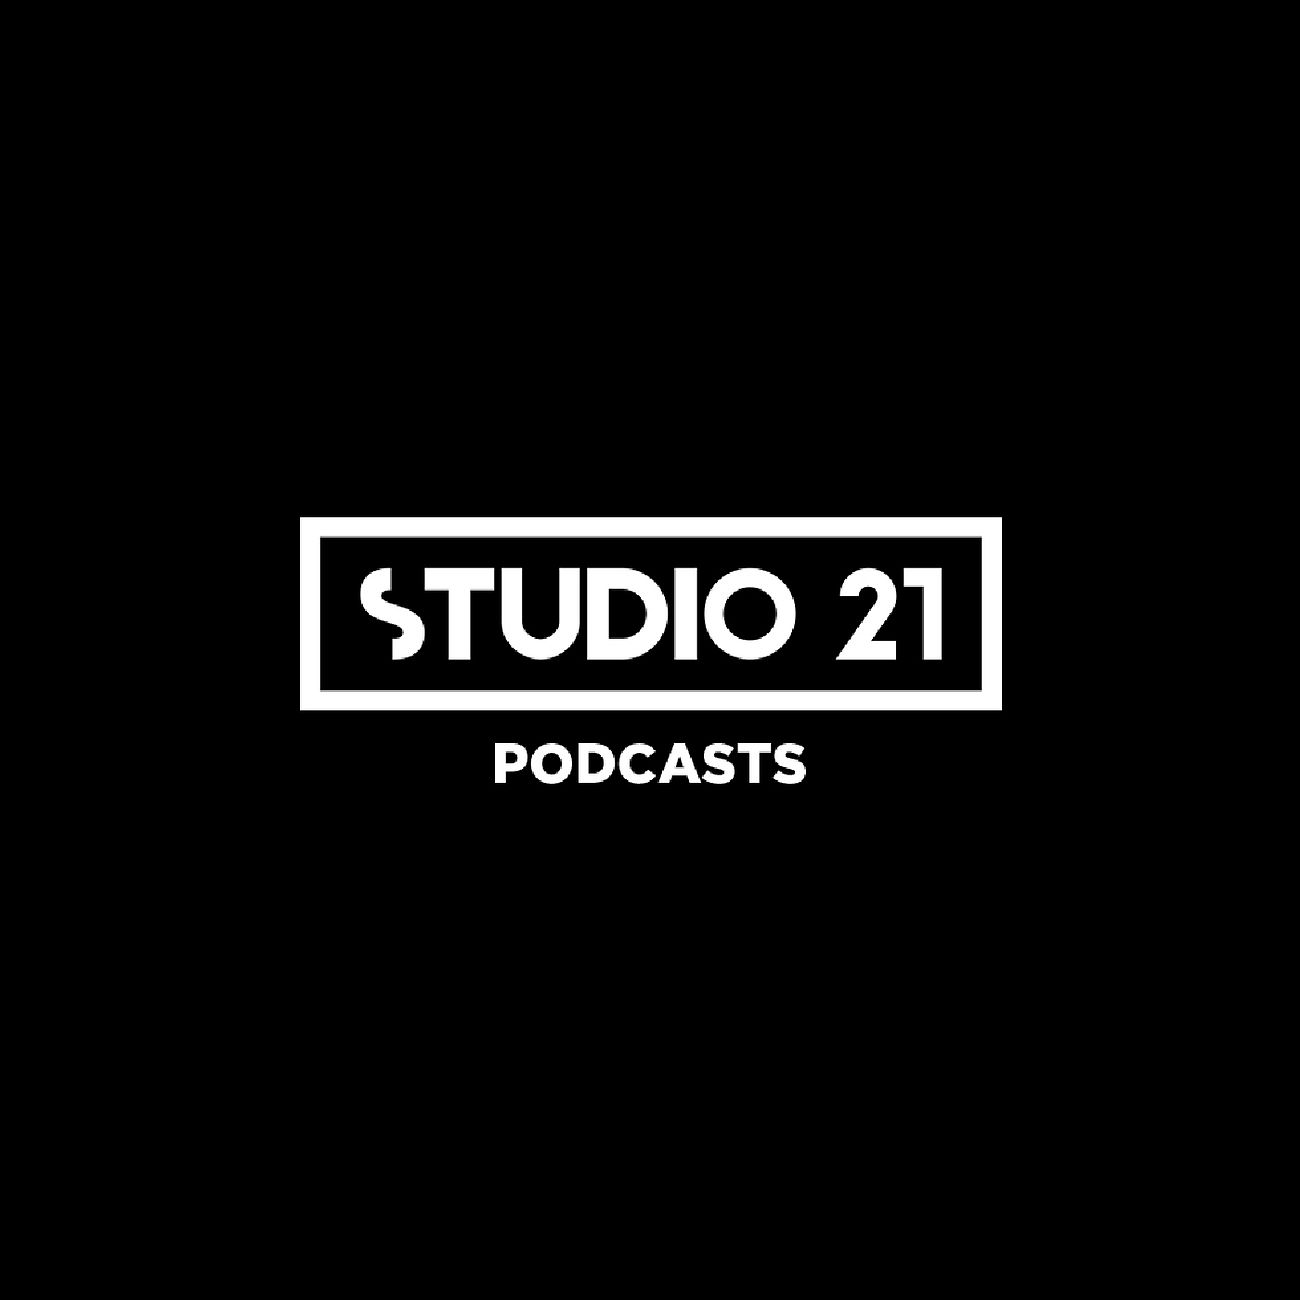 STUDIO 21 Podcasts